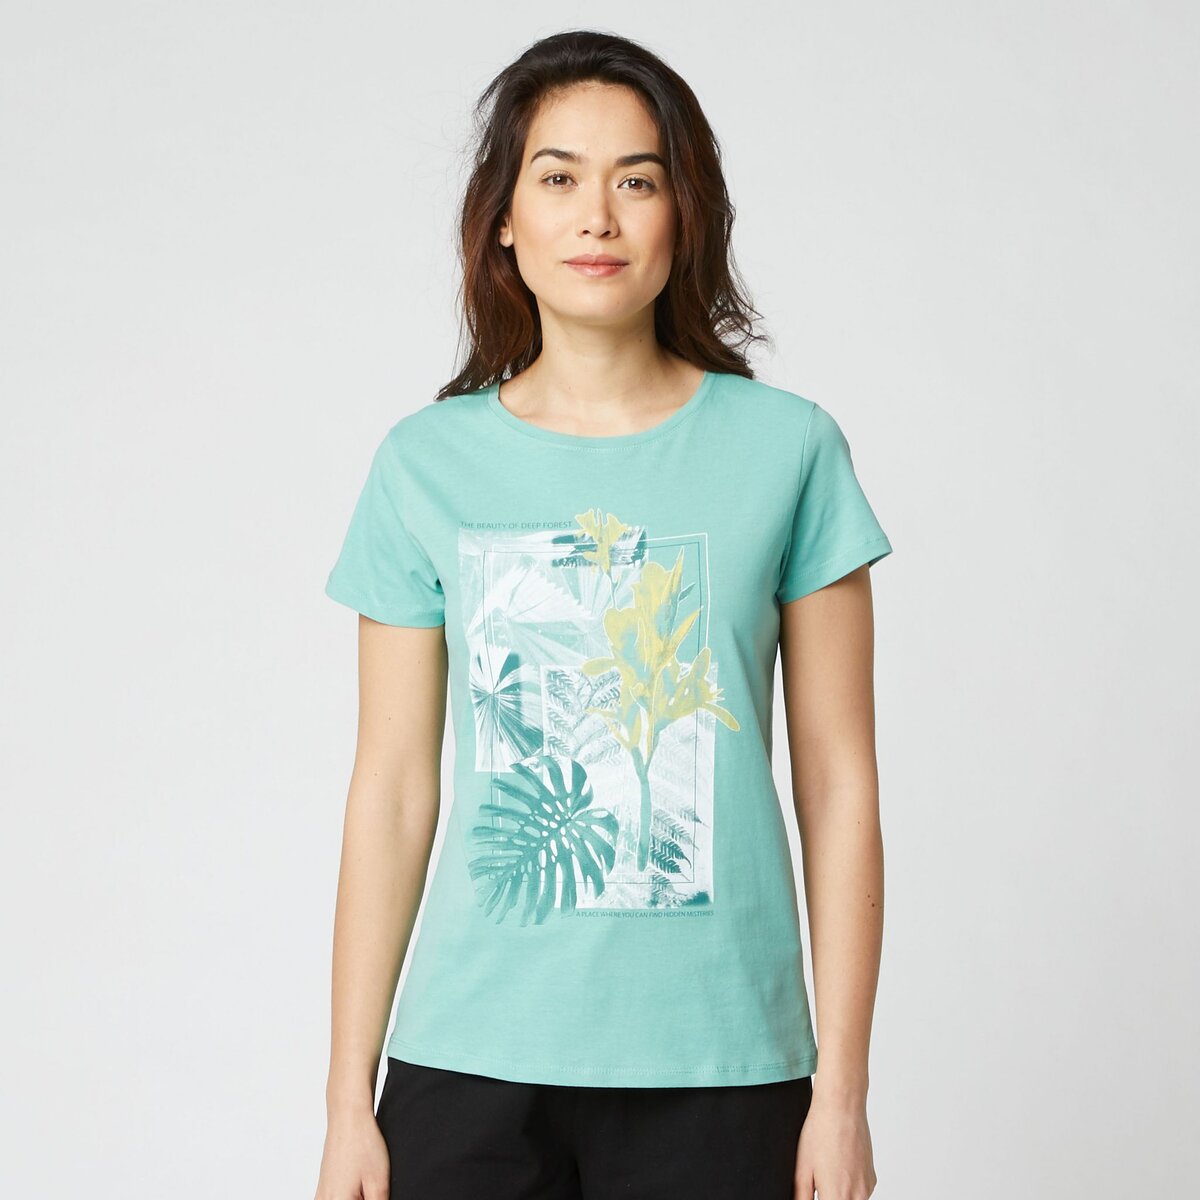 IN EXTENSO T-shirt manches courtes vert imprimé tropical femme